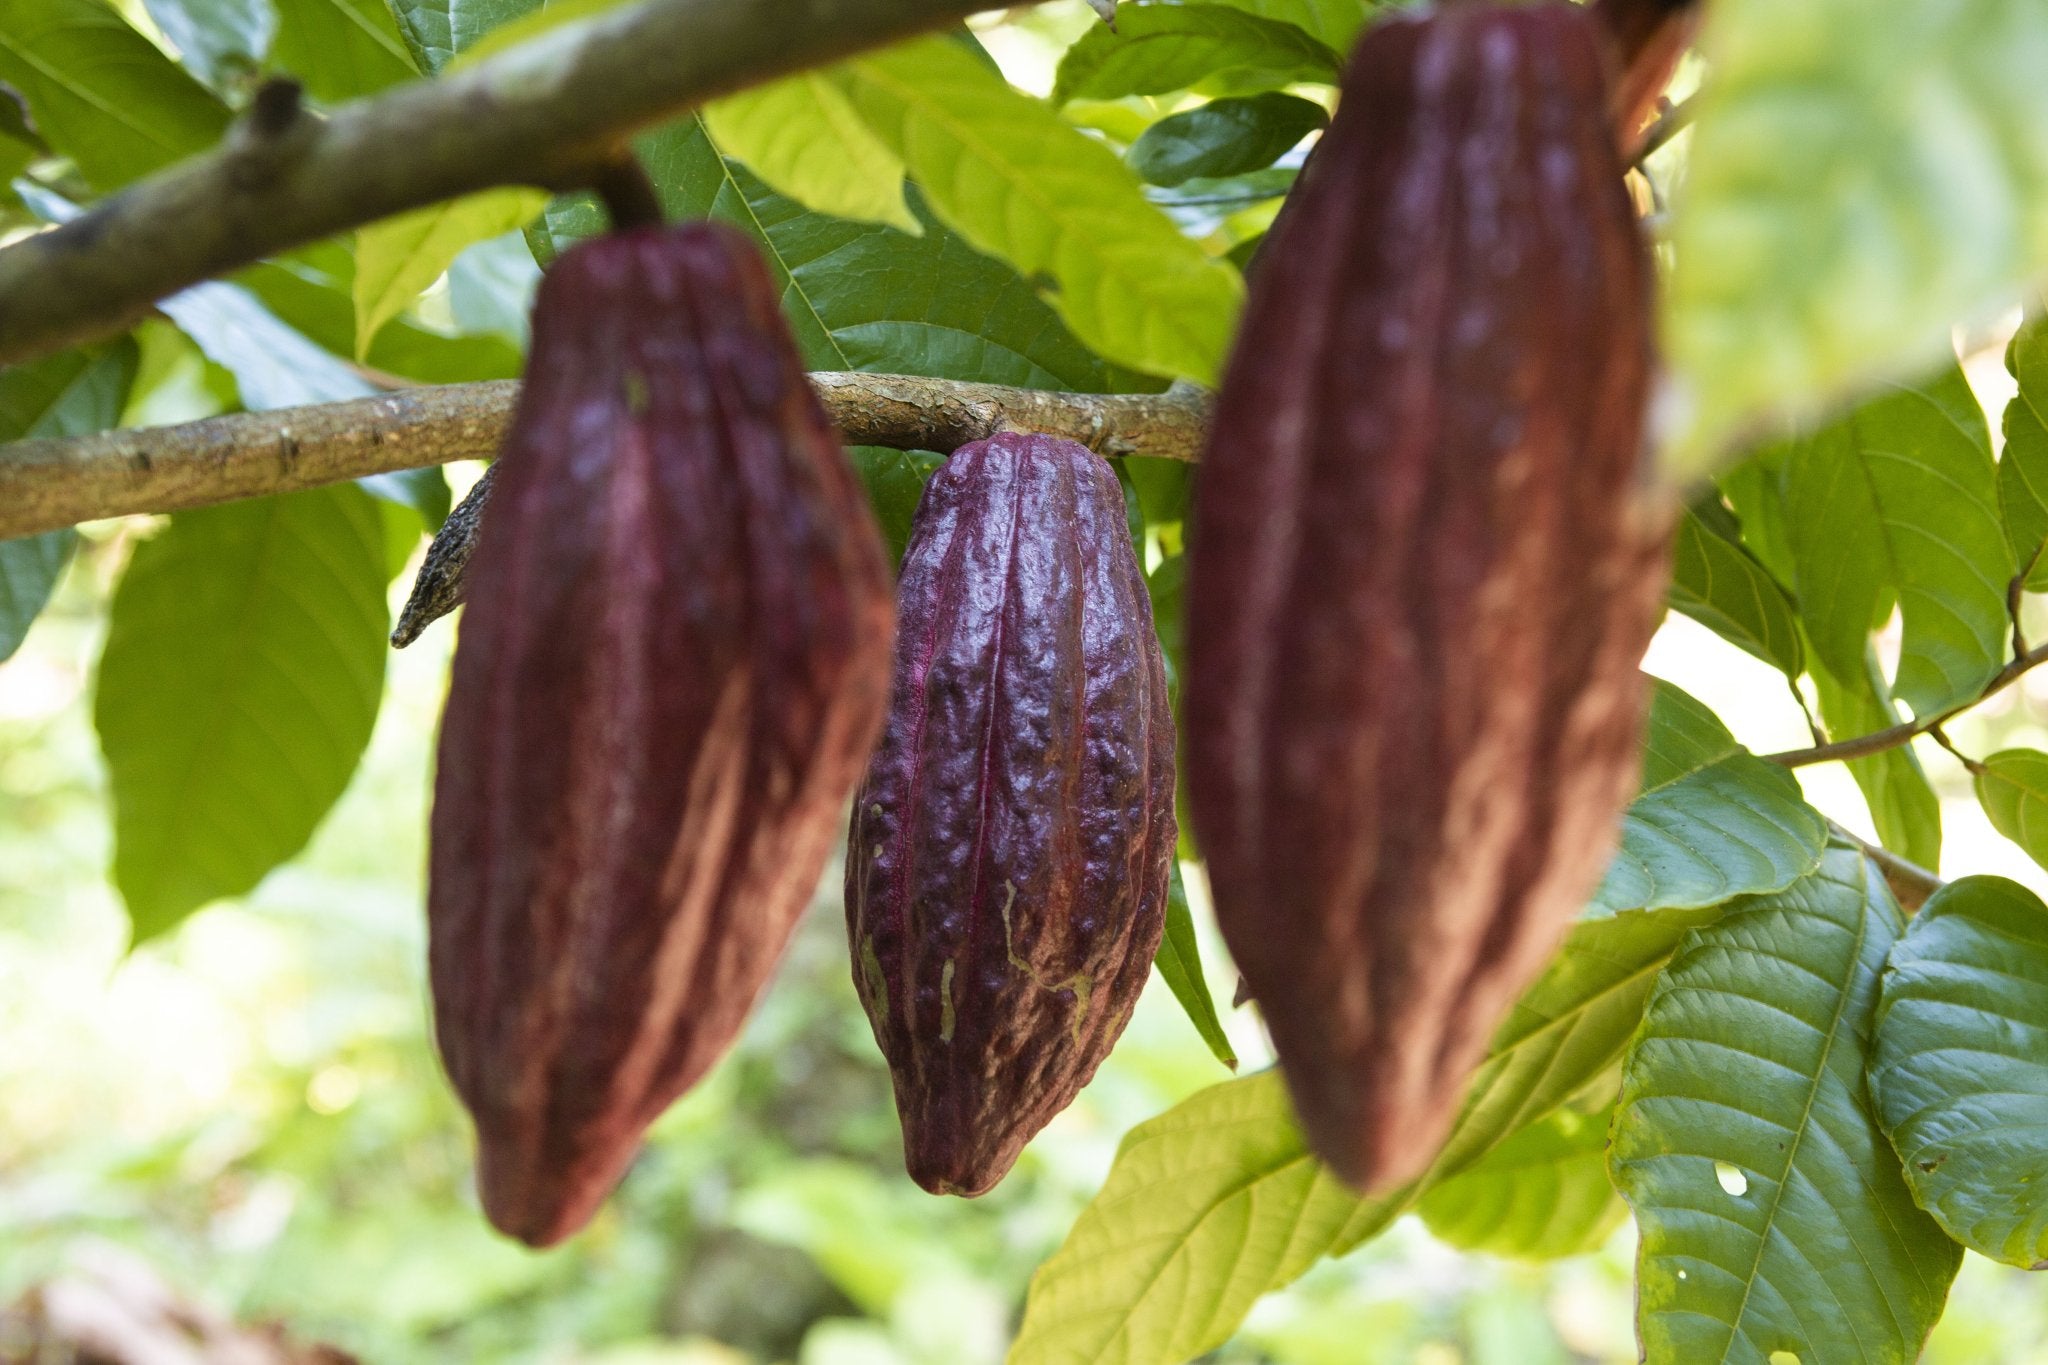 Cacao Powder 16 oz- Criollo - Natural Zing